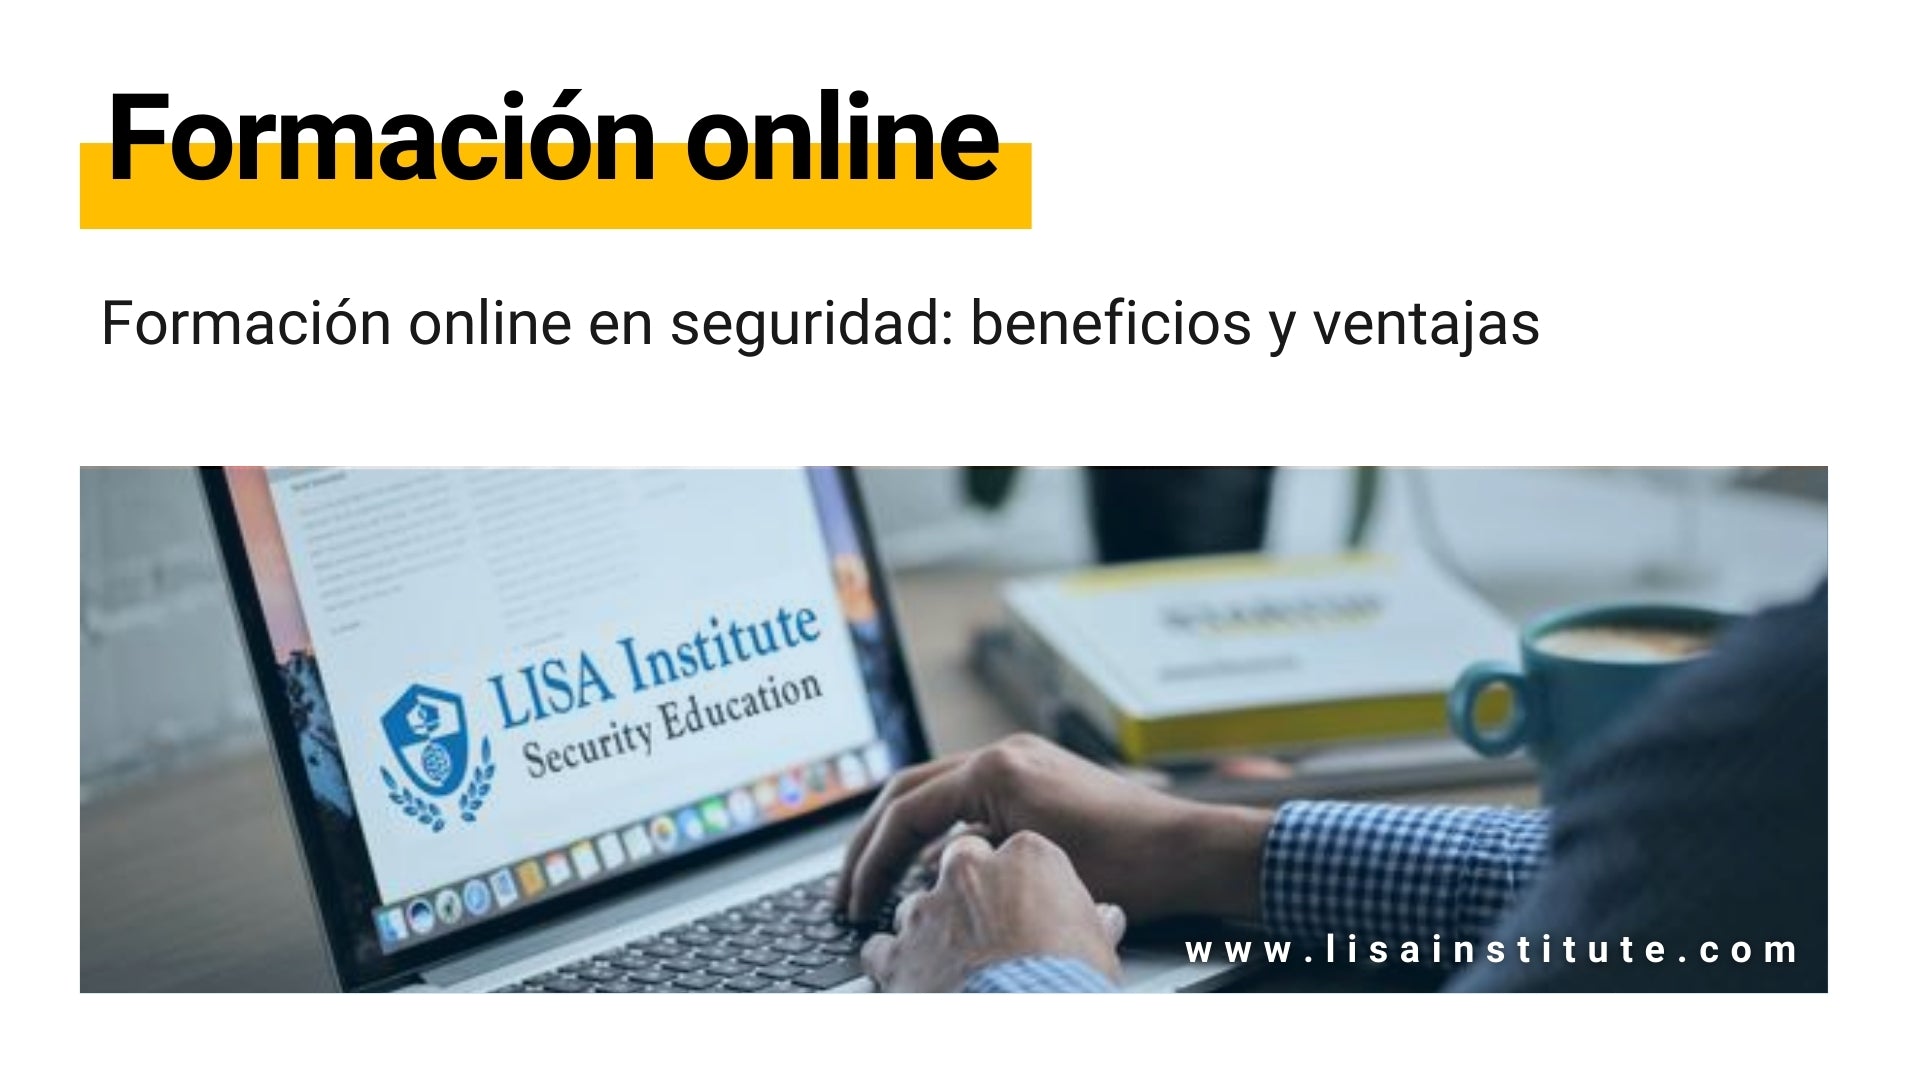 Formación online en seguridad beneficios y ventajas - LISA Institute